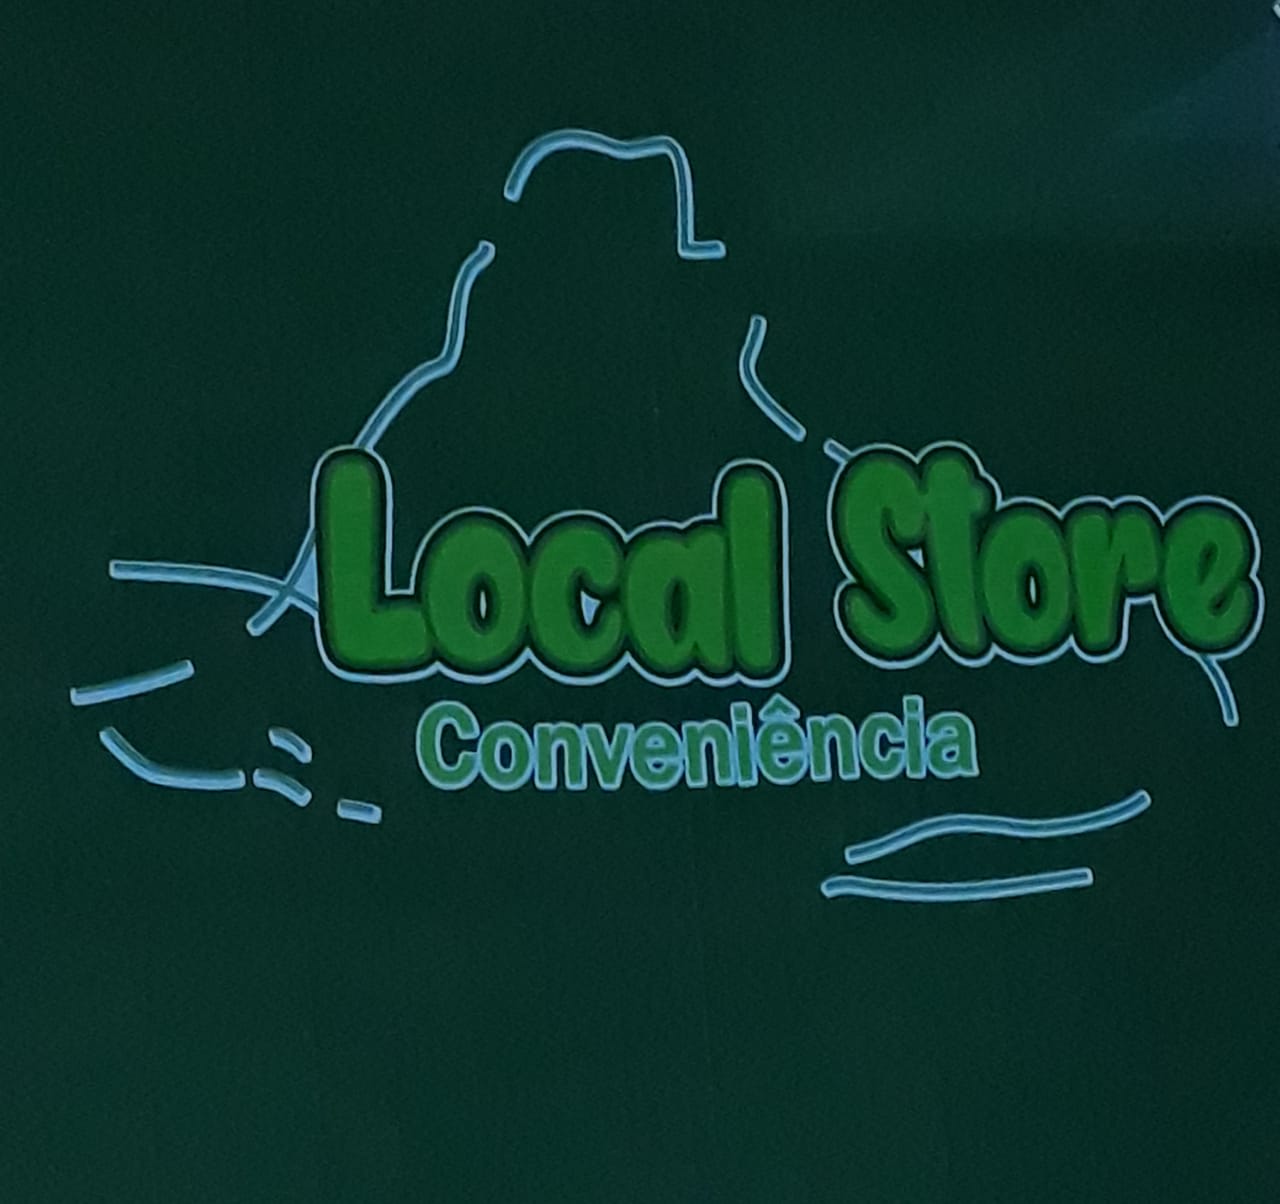 Local Story Conveniência